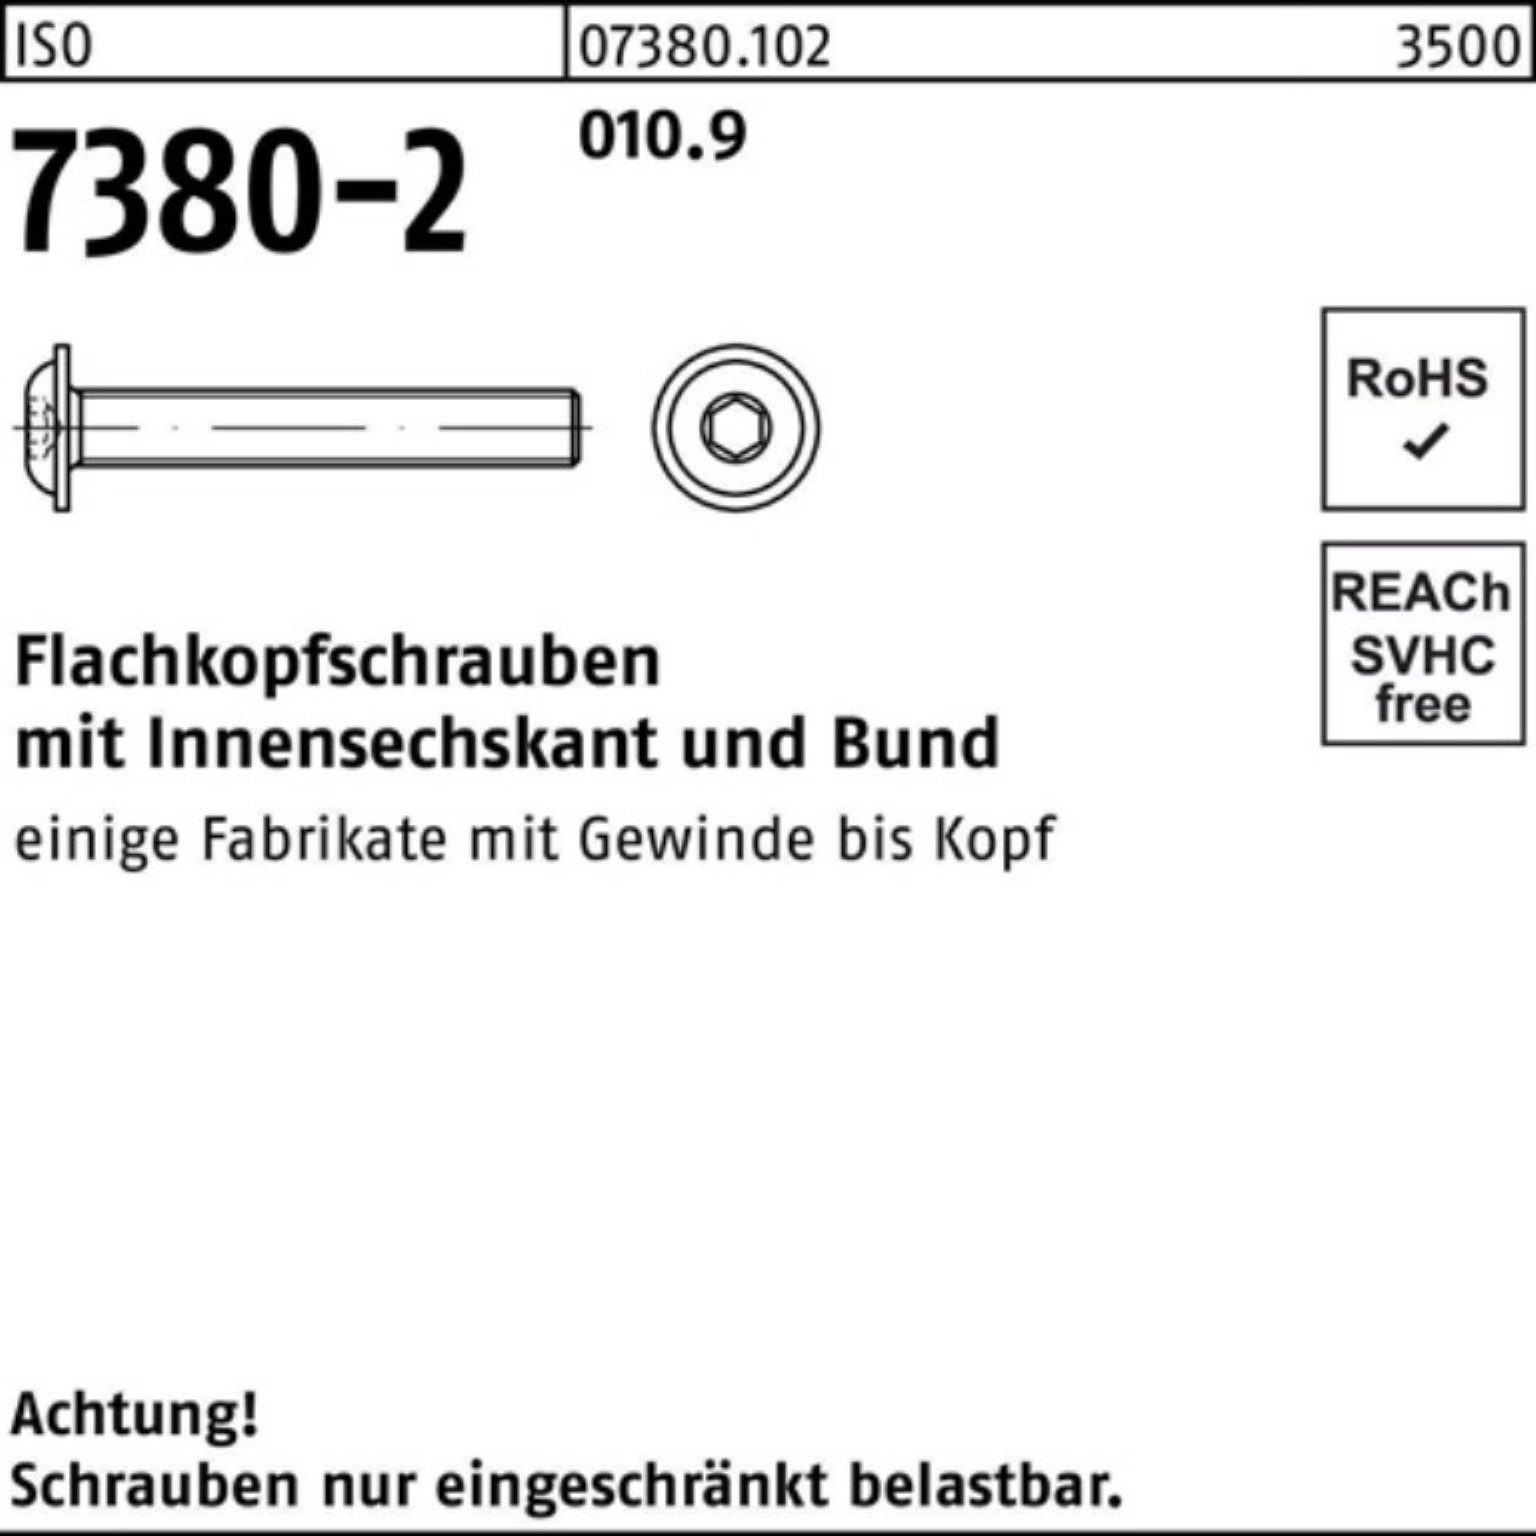 Reyher Schraube 500er Pack Flachkopfschraube ISO Bund/Innen-6kt 7380-2 50 010.9 12 M6x